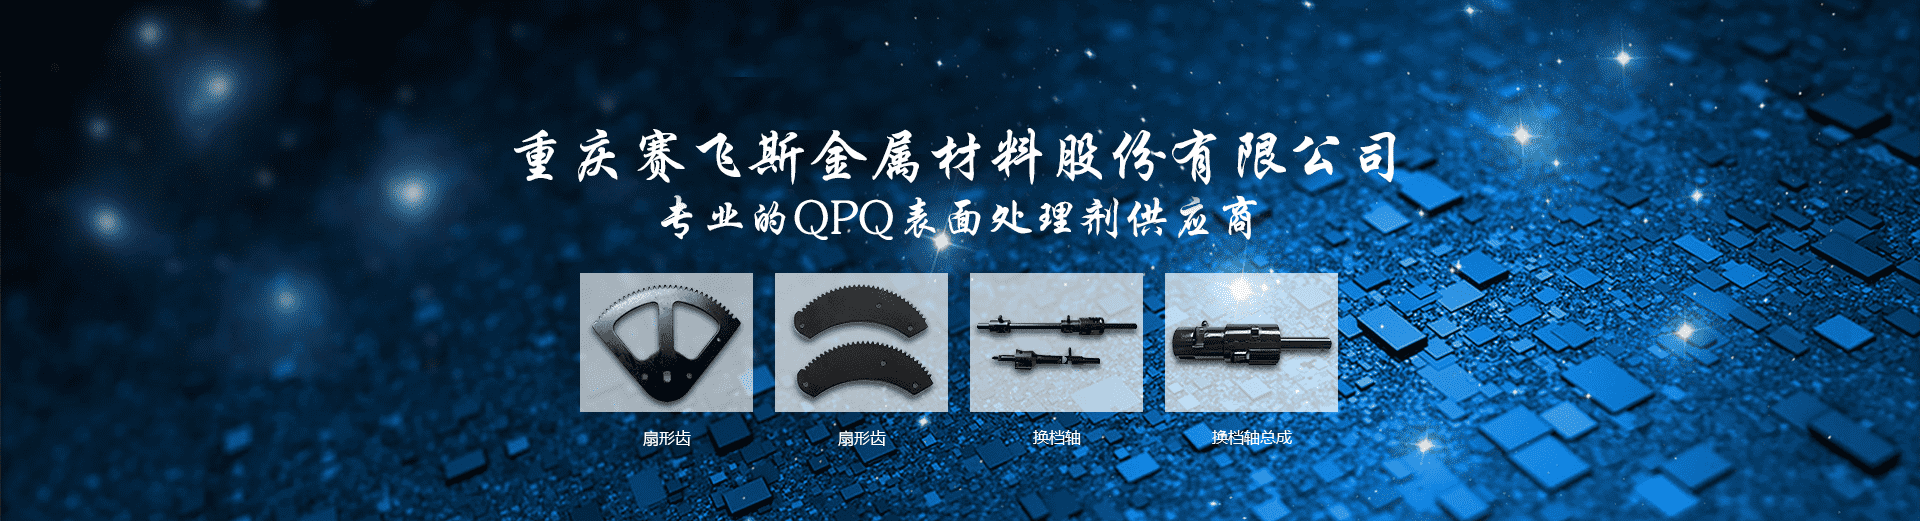 QPQ處理技術